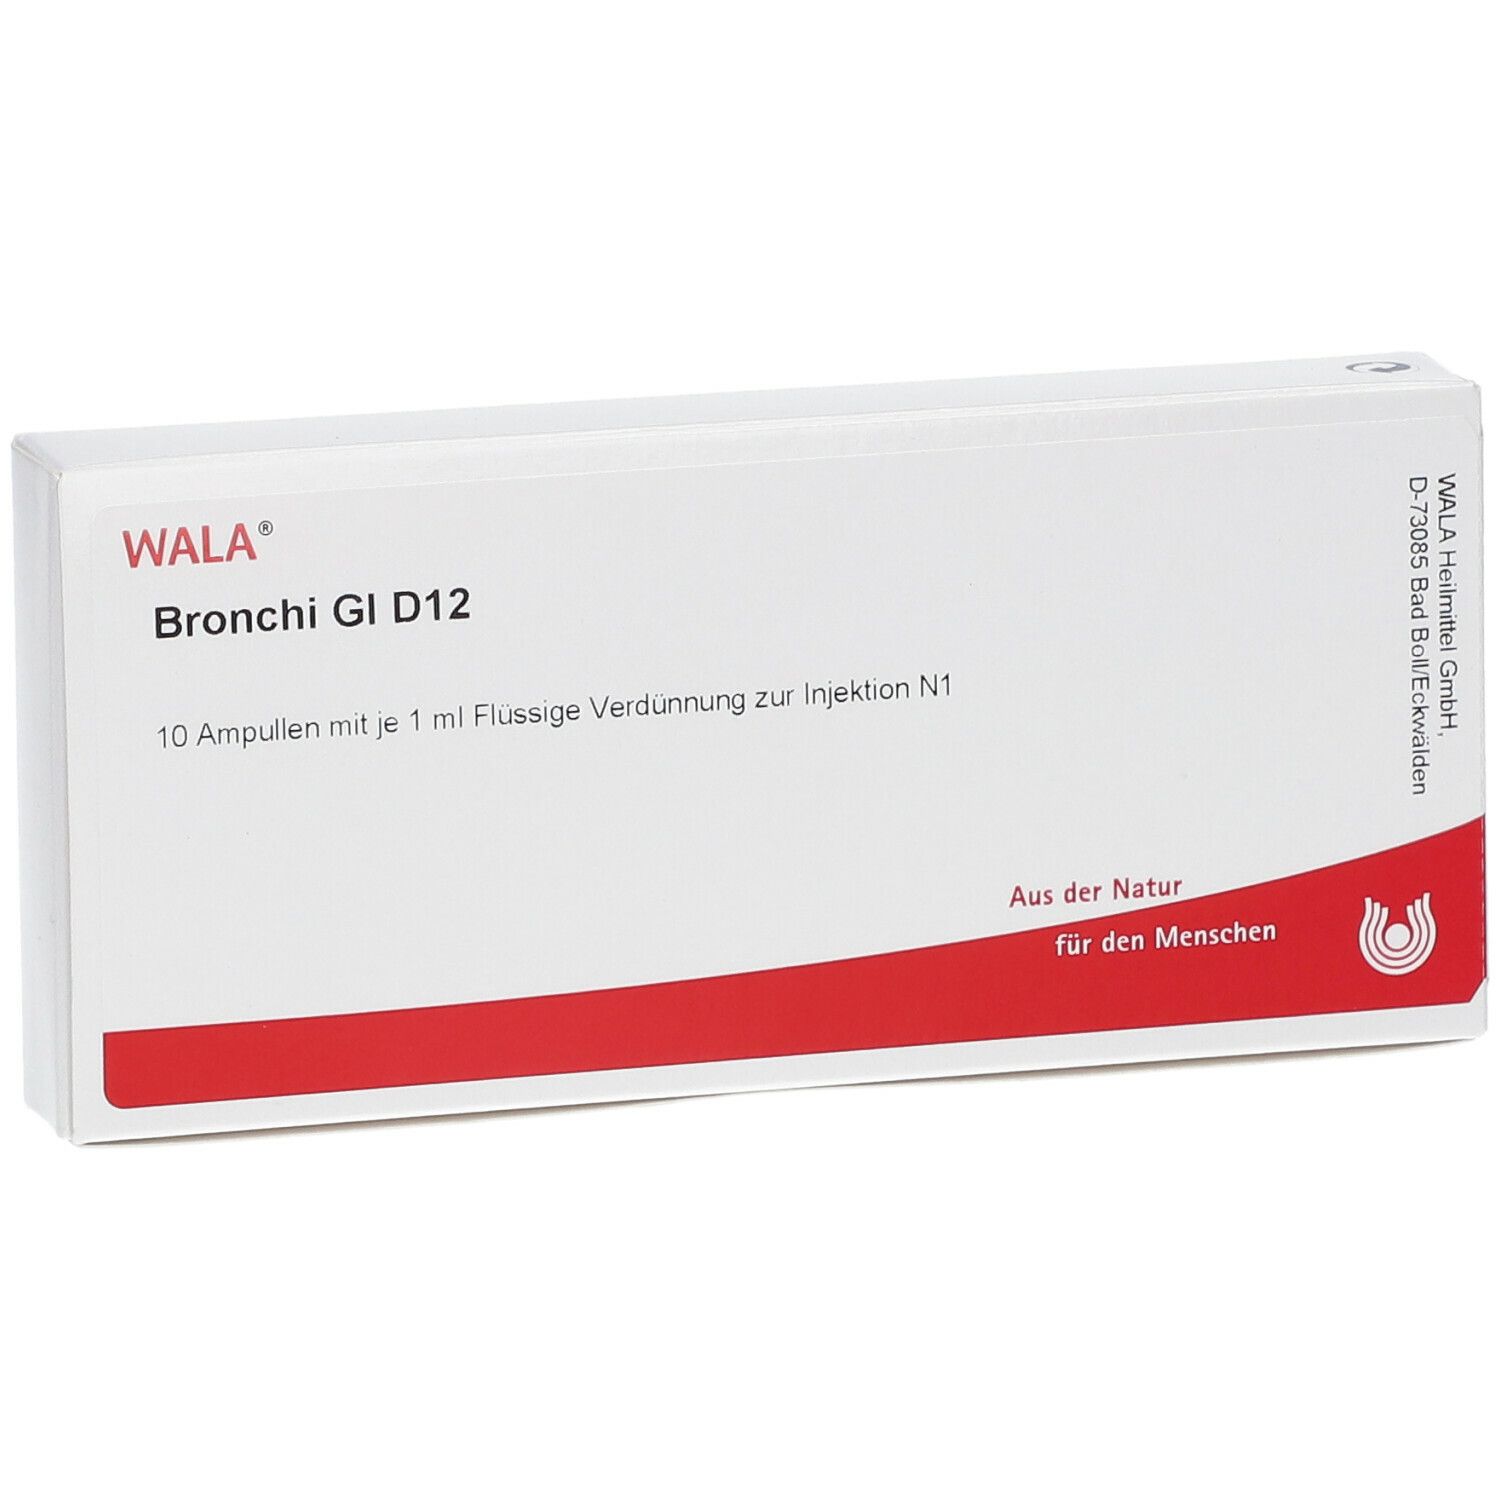 WALA® Bronchi Gl D 12